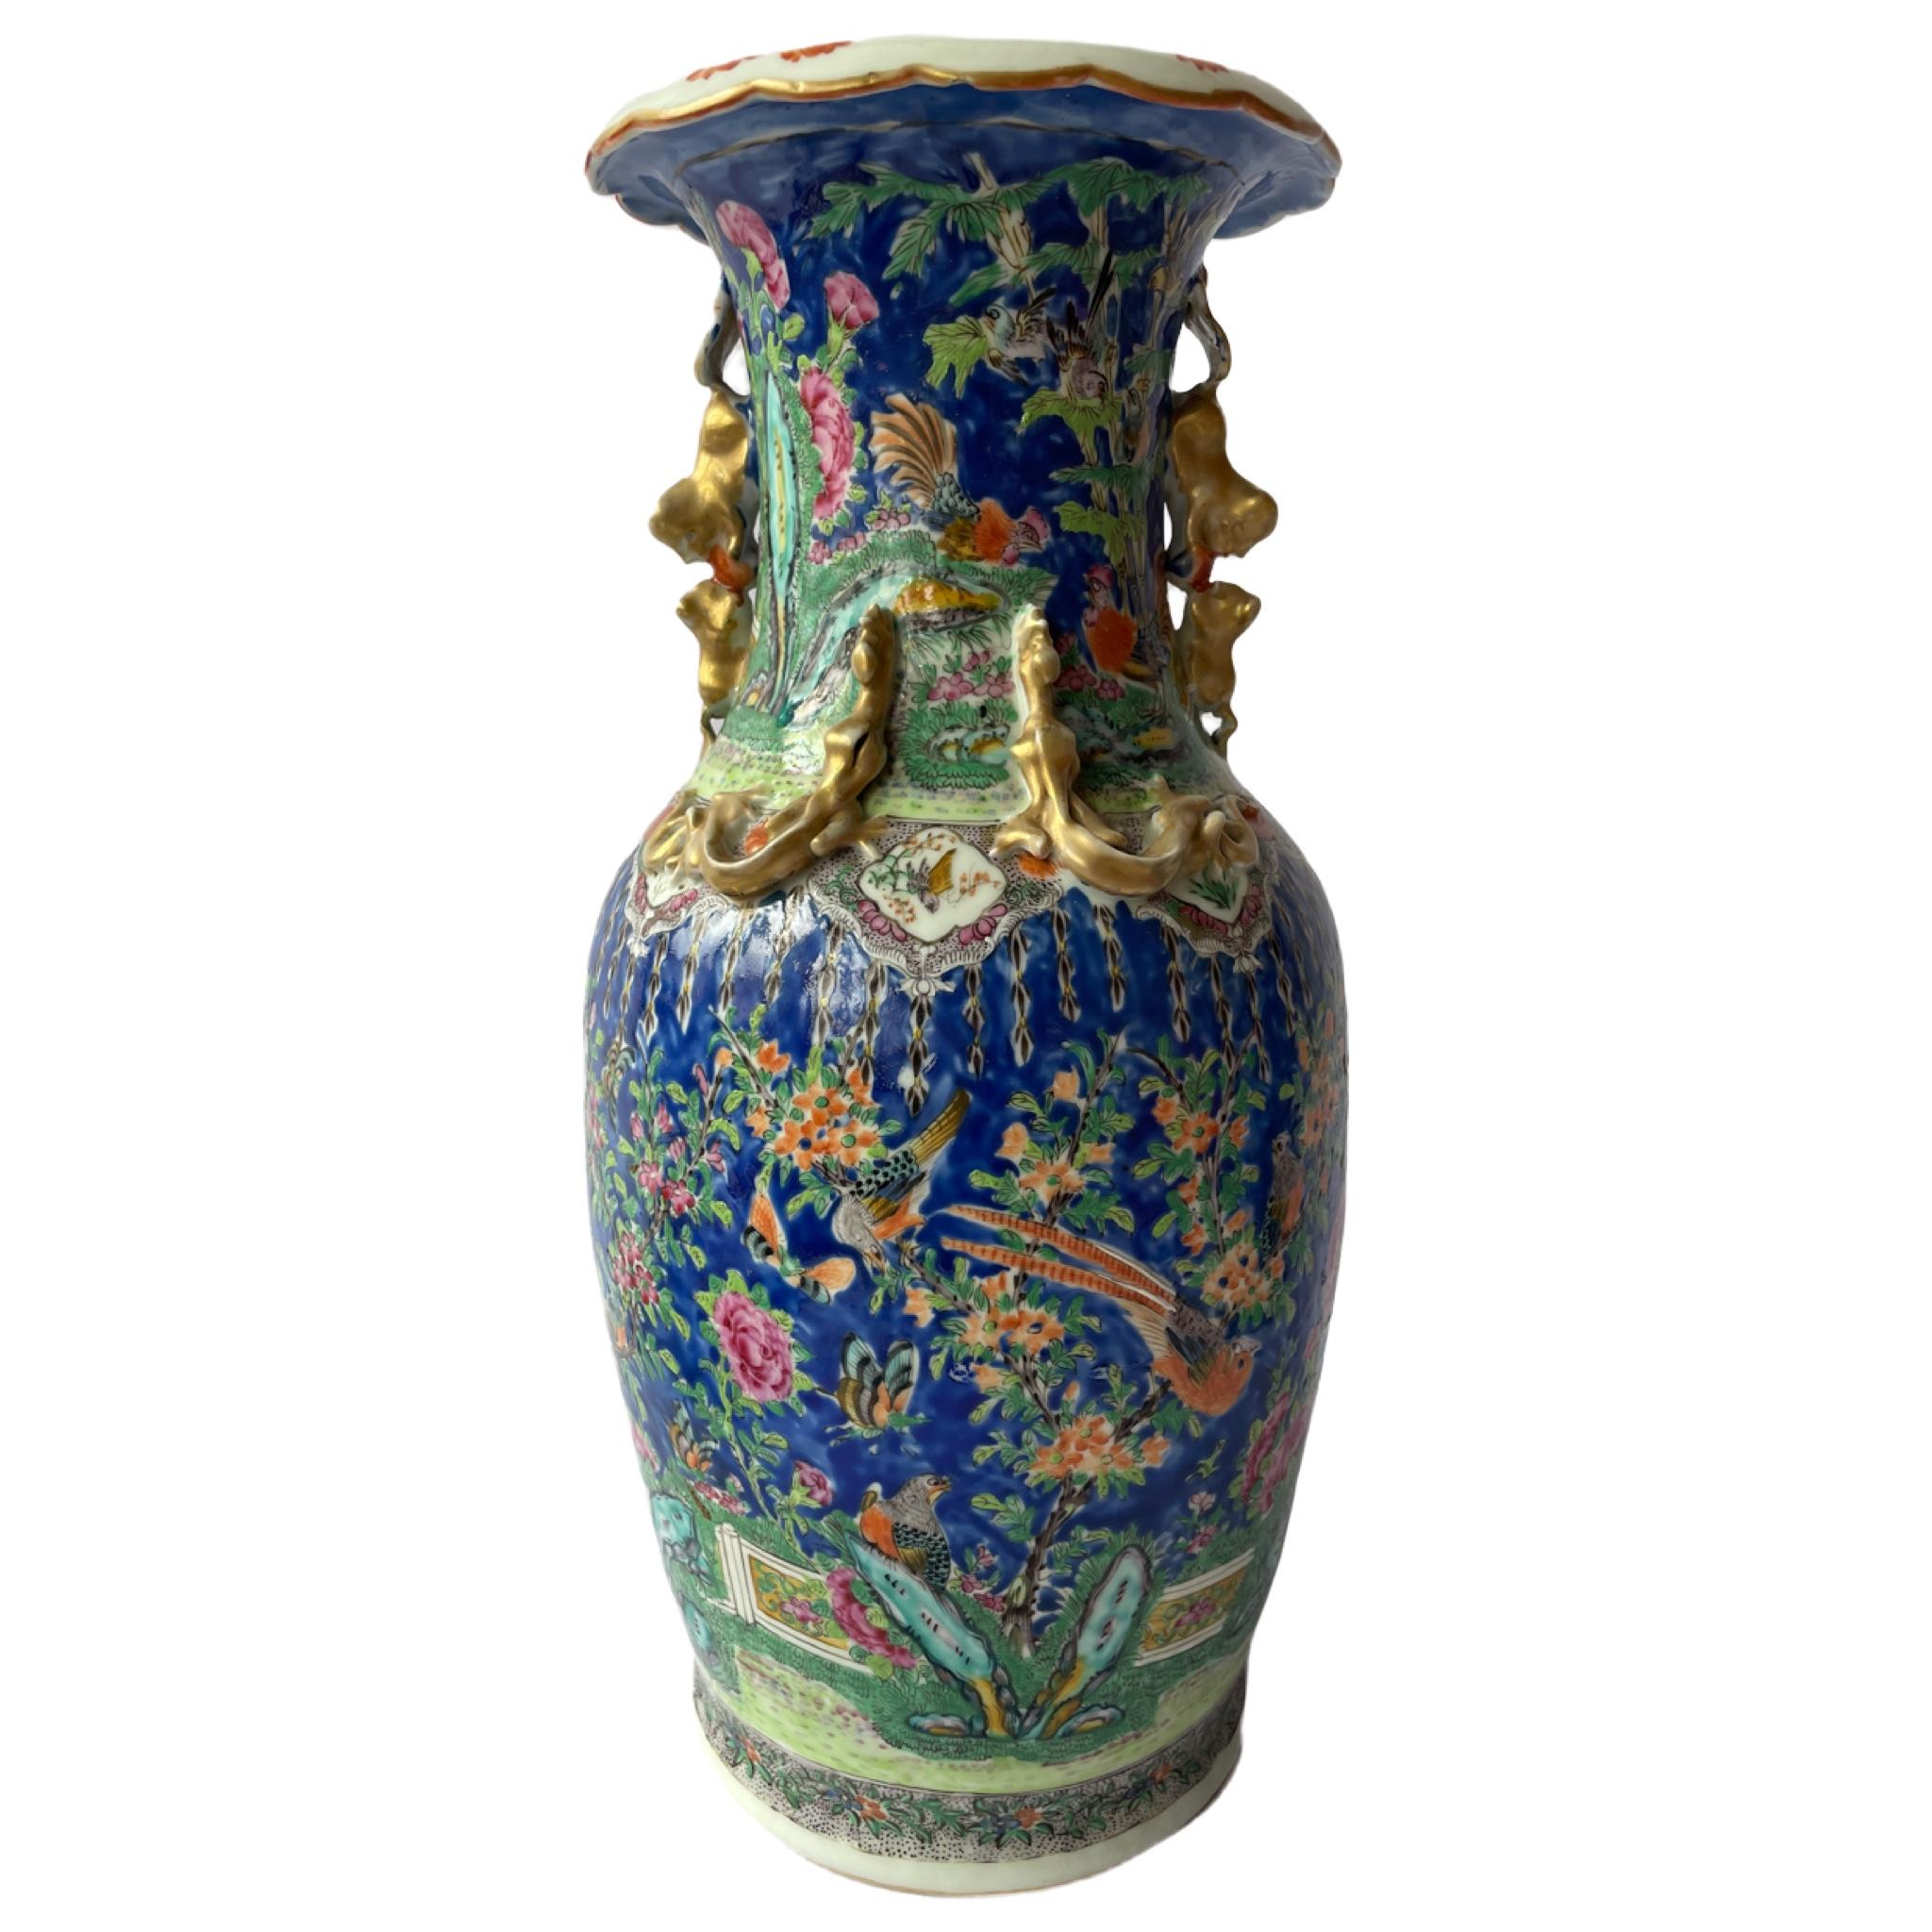 La famille rose désigne un type de porcelaine chinoise caractérisé par l'utilisation d'émaux opaques aux couleurs vives, notamment dans les tons de rose, de violet, de vert et de jaune. Le terme 